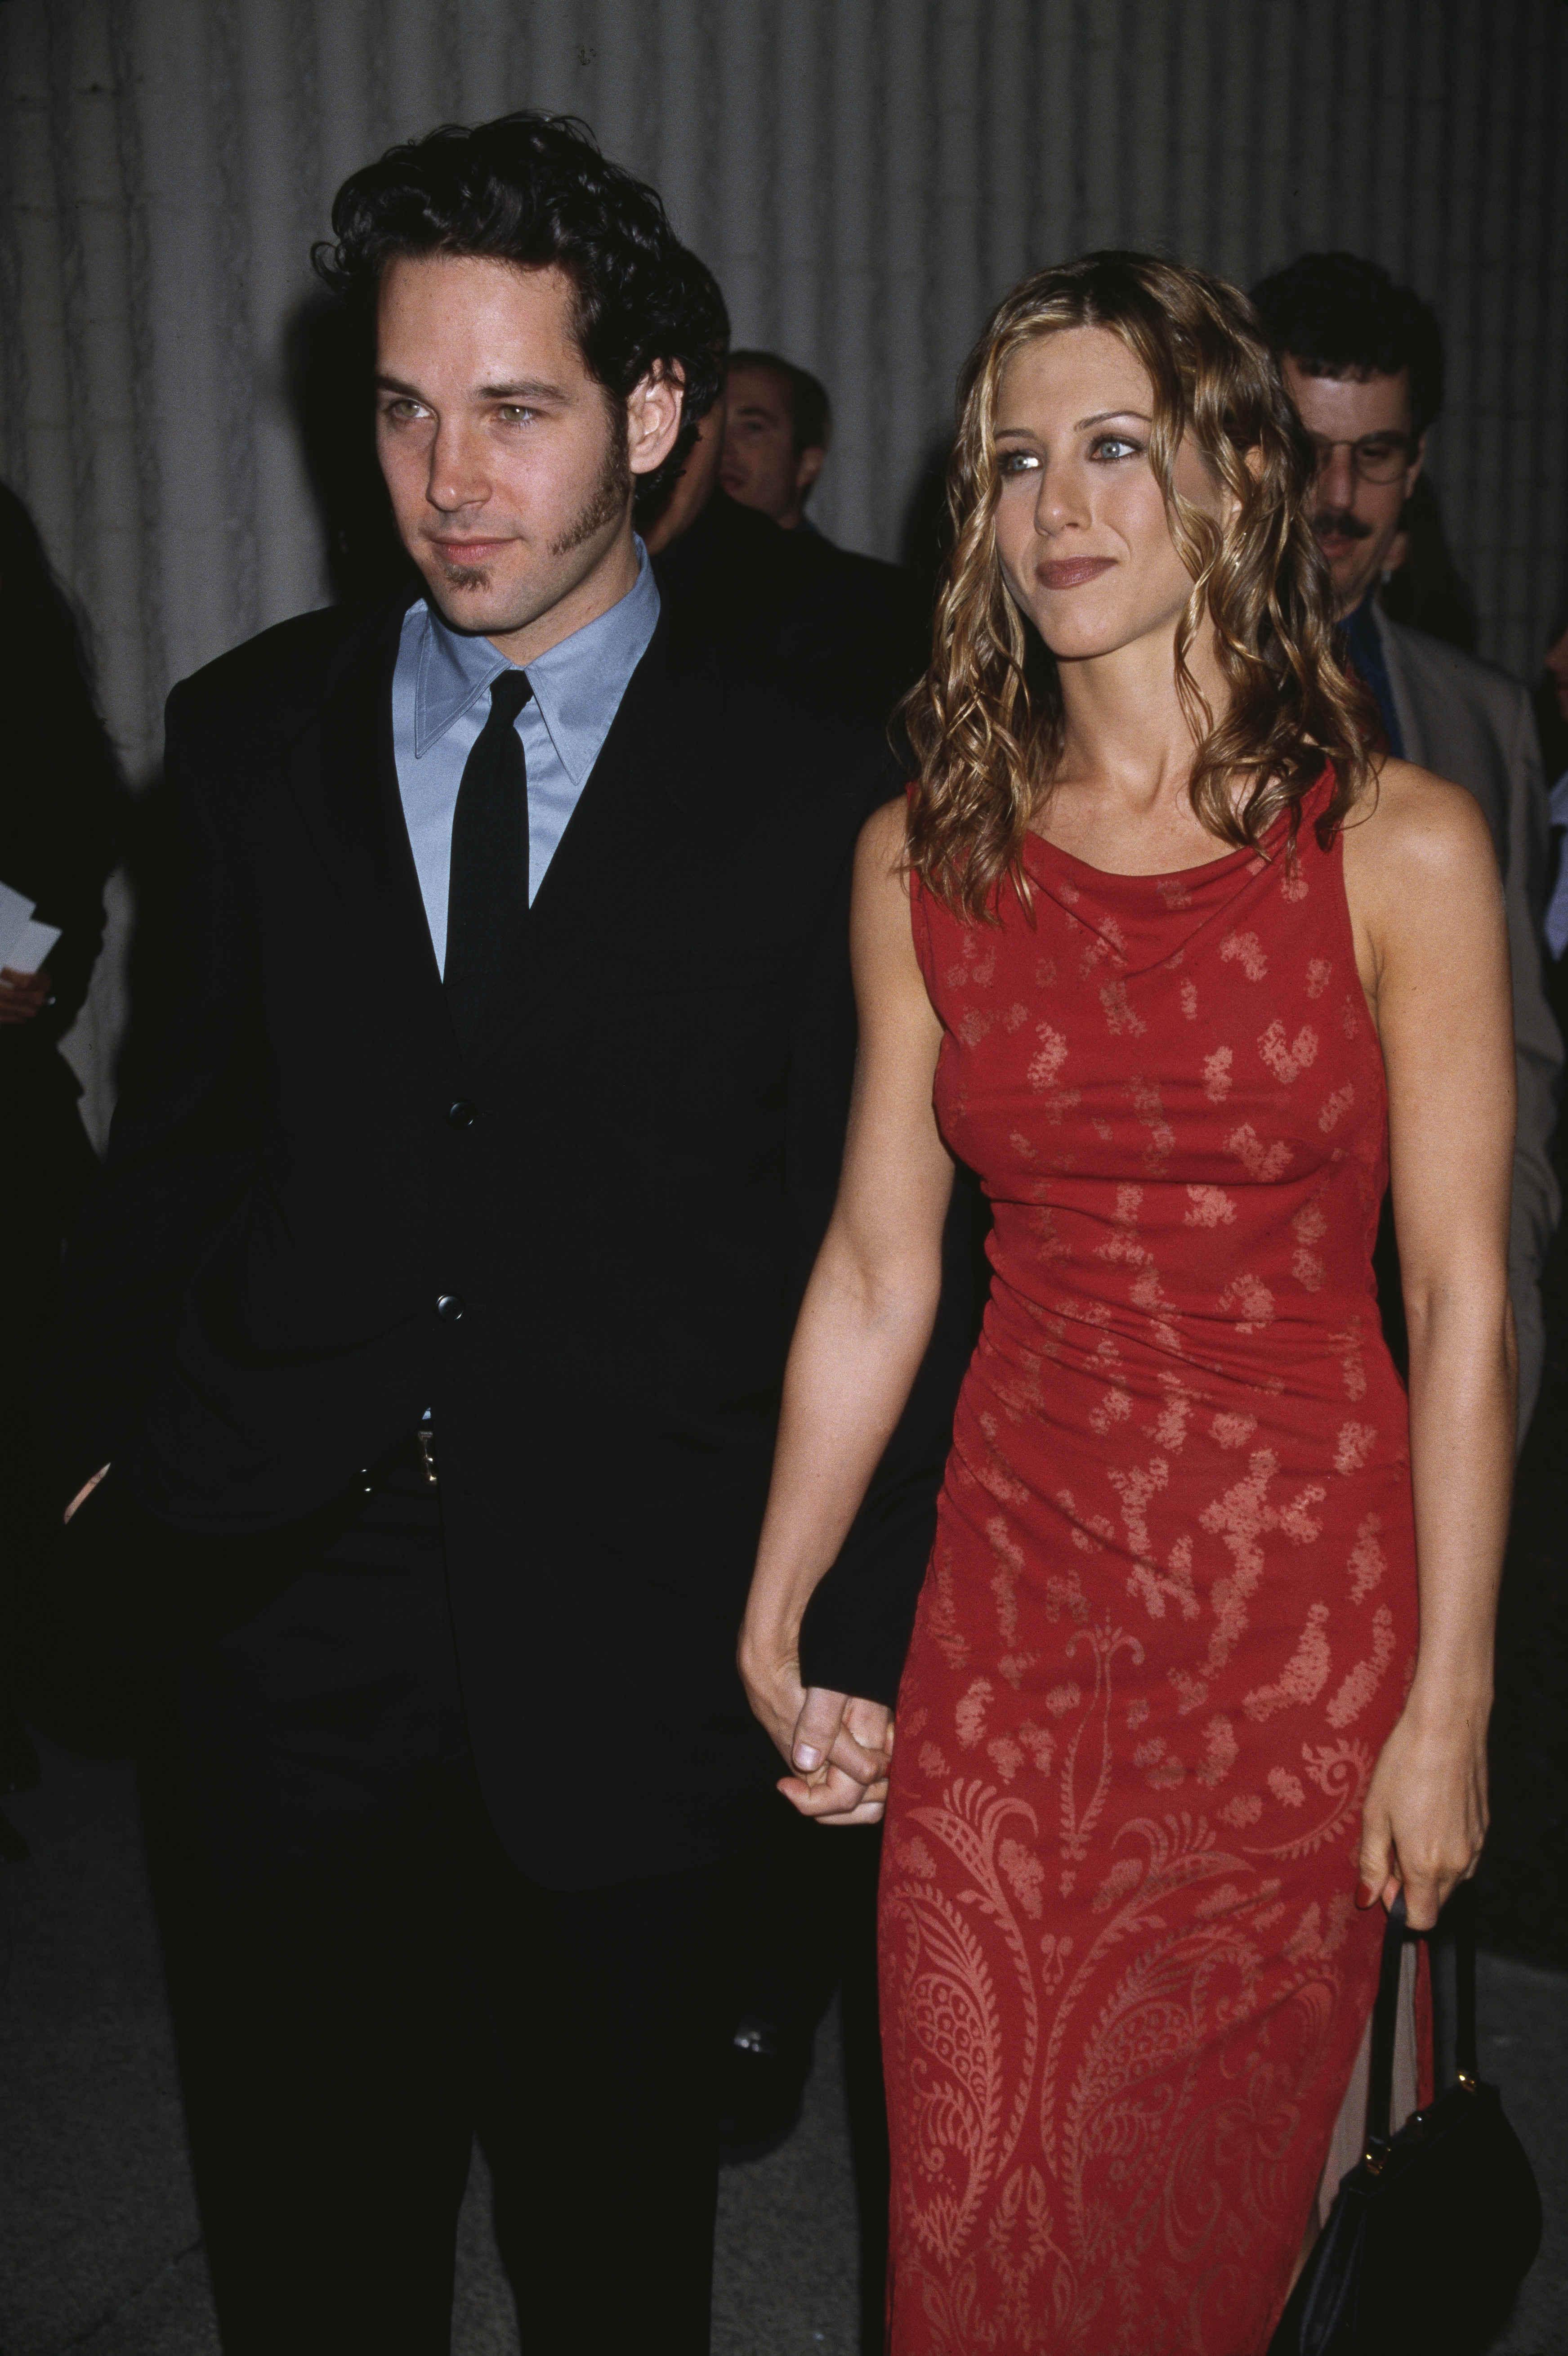 Jennifer Aniston y Paul Rudd en el estreno de "The Object of My Affection", 1998 | Foto: Getty Images